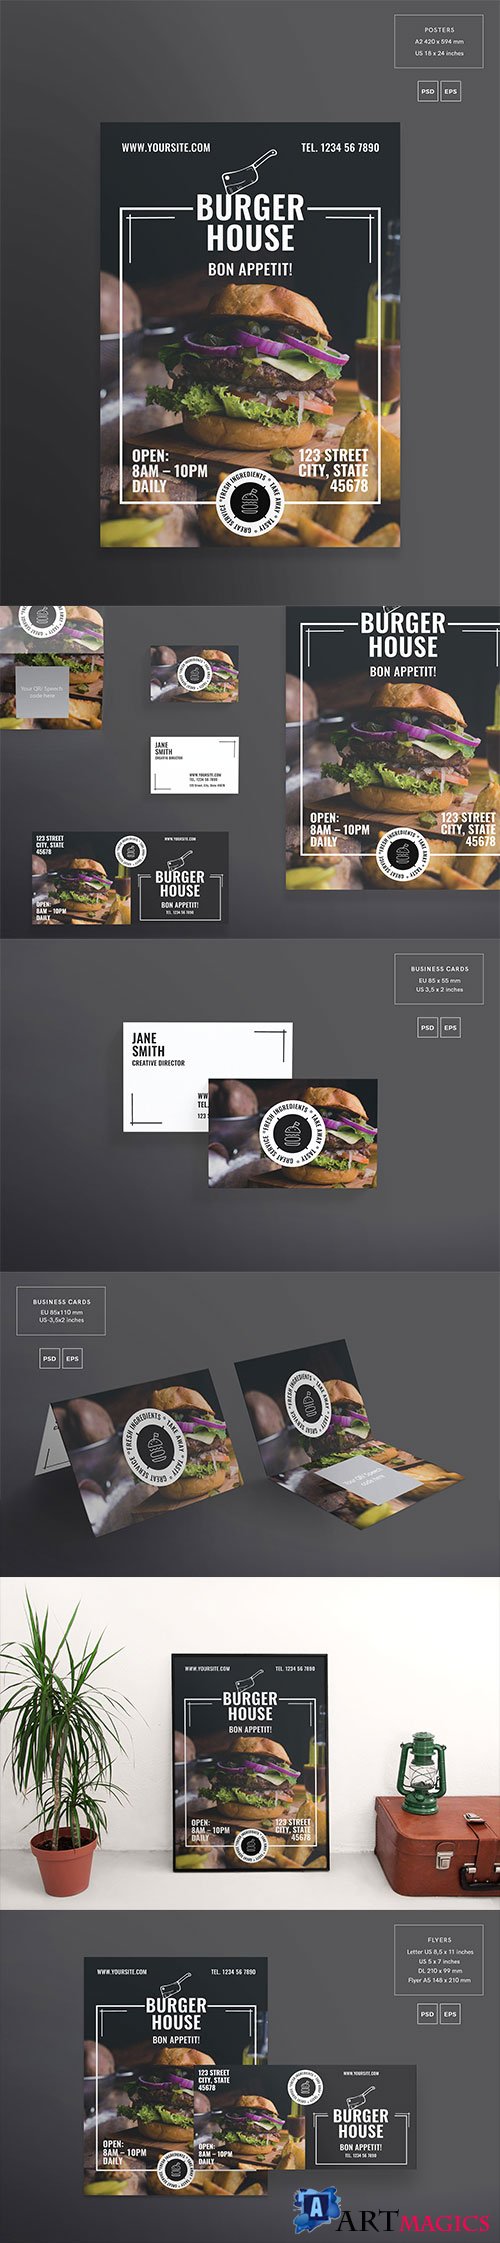 CM - Print Pack | Burger House 2171648